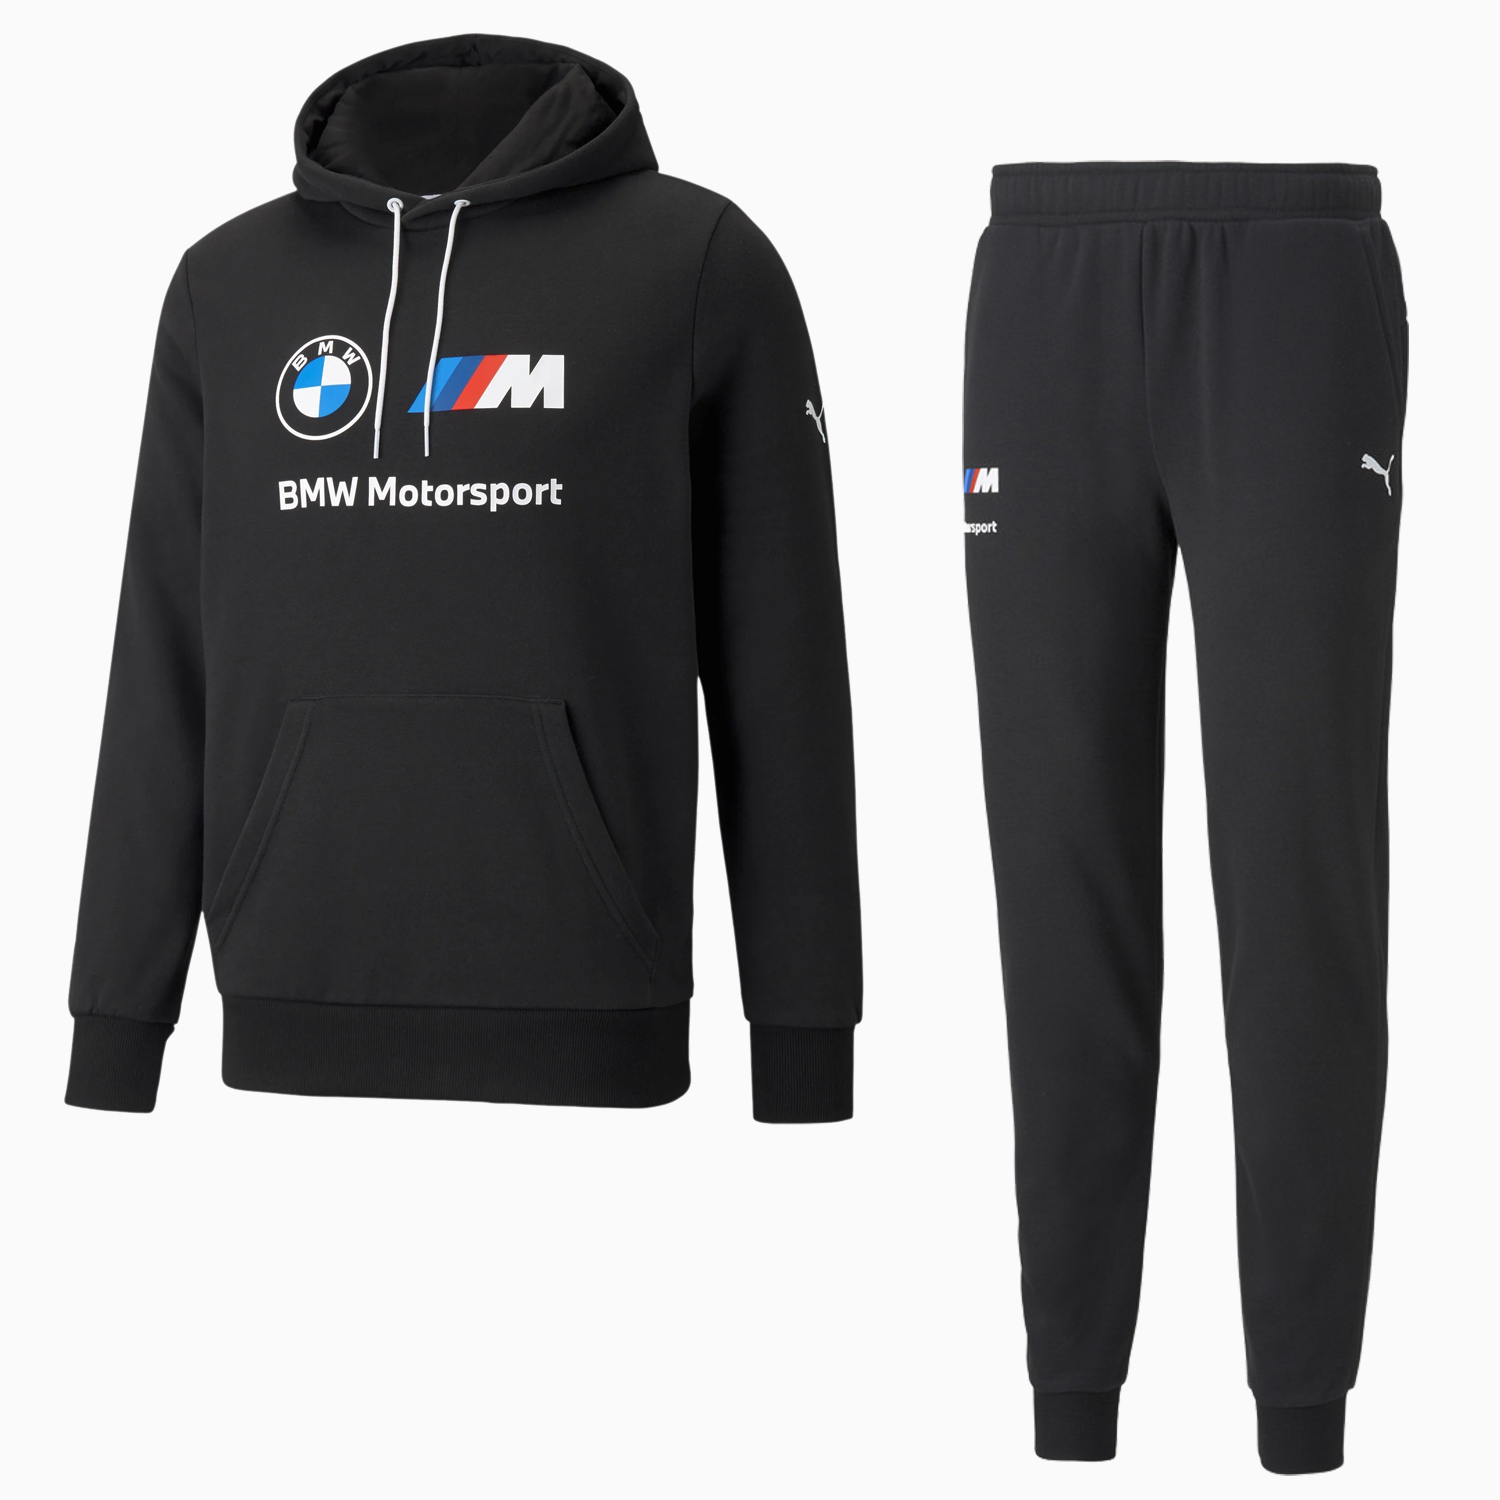 Puma Men's Bmw Motorsport Essentials Outfit